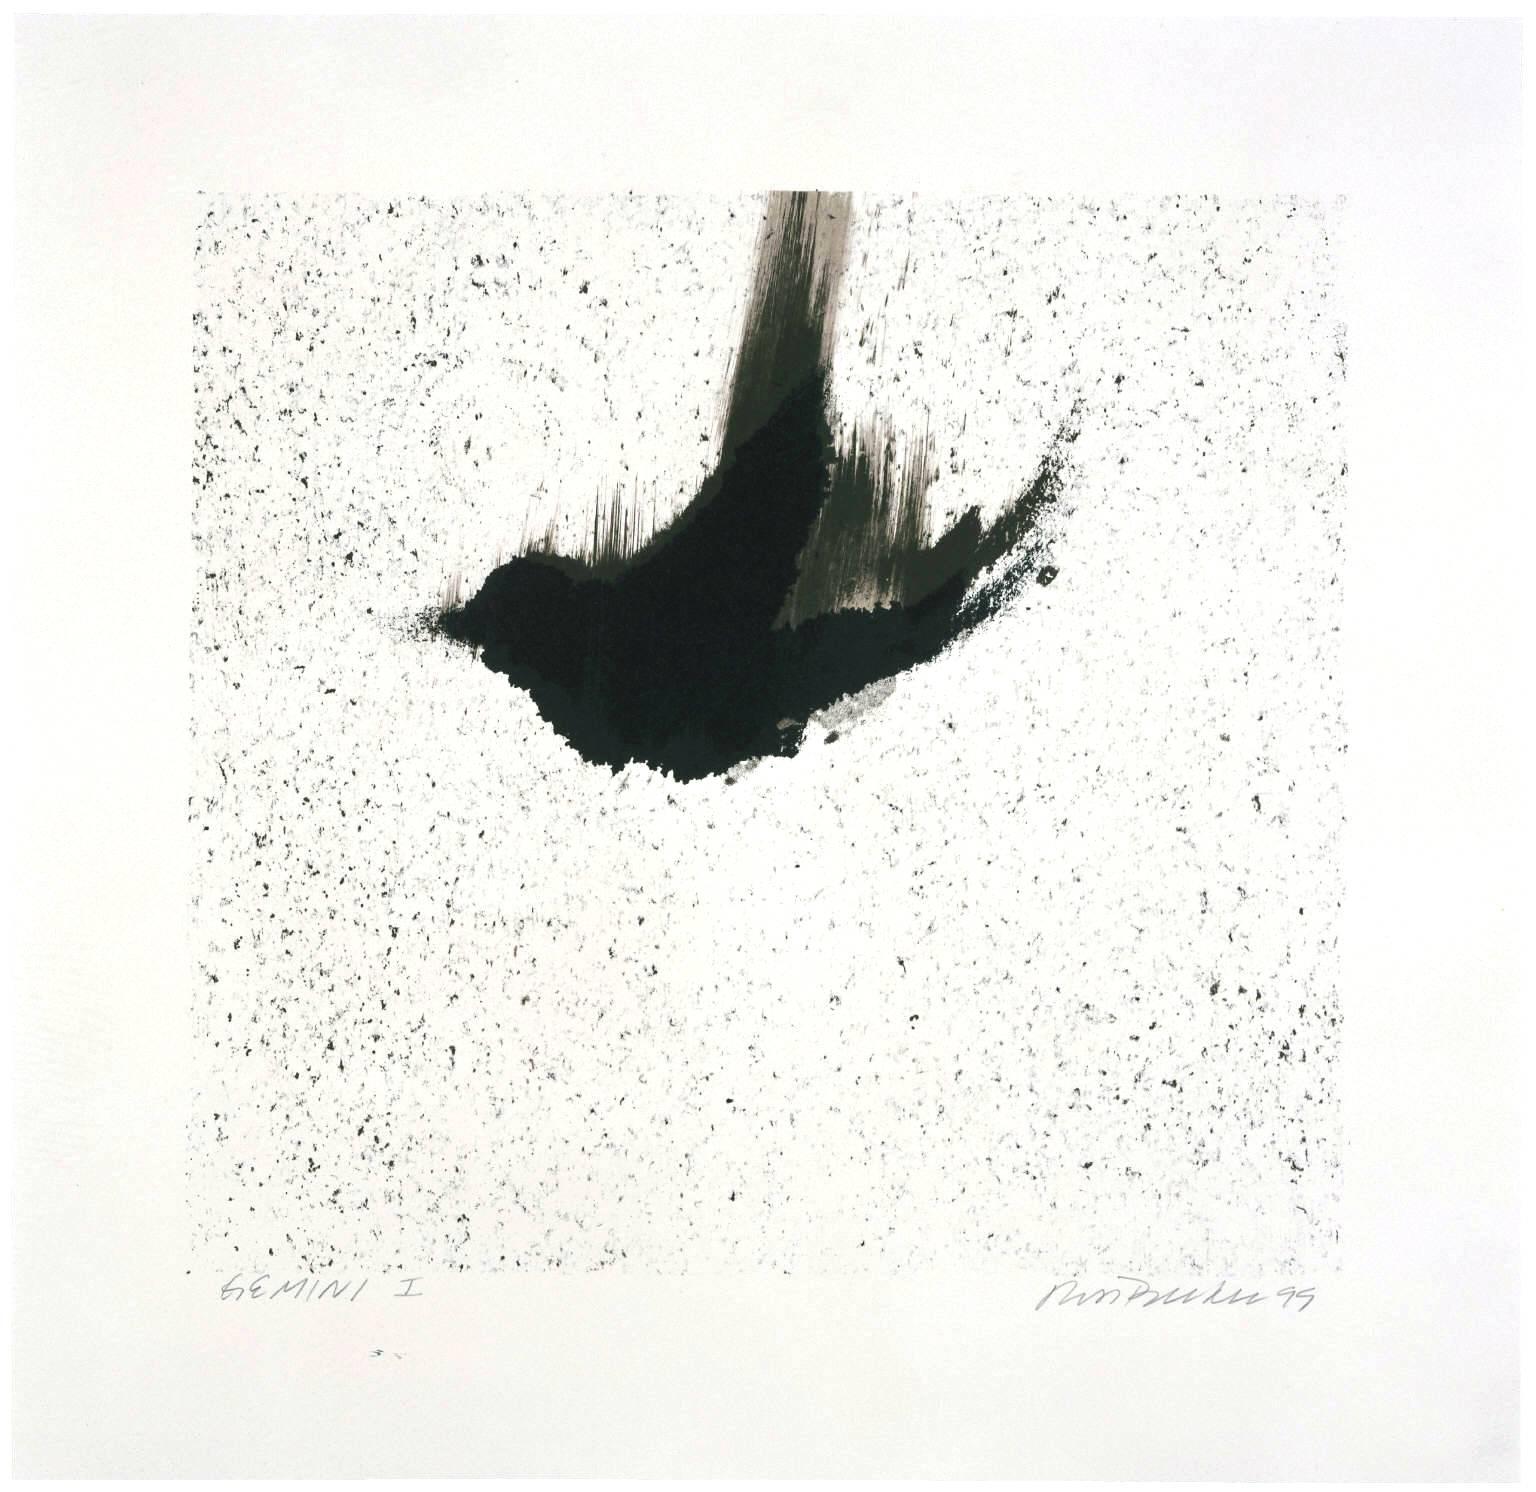 Ross Bleckner Animal Print - Single Bird